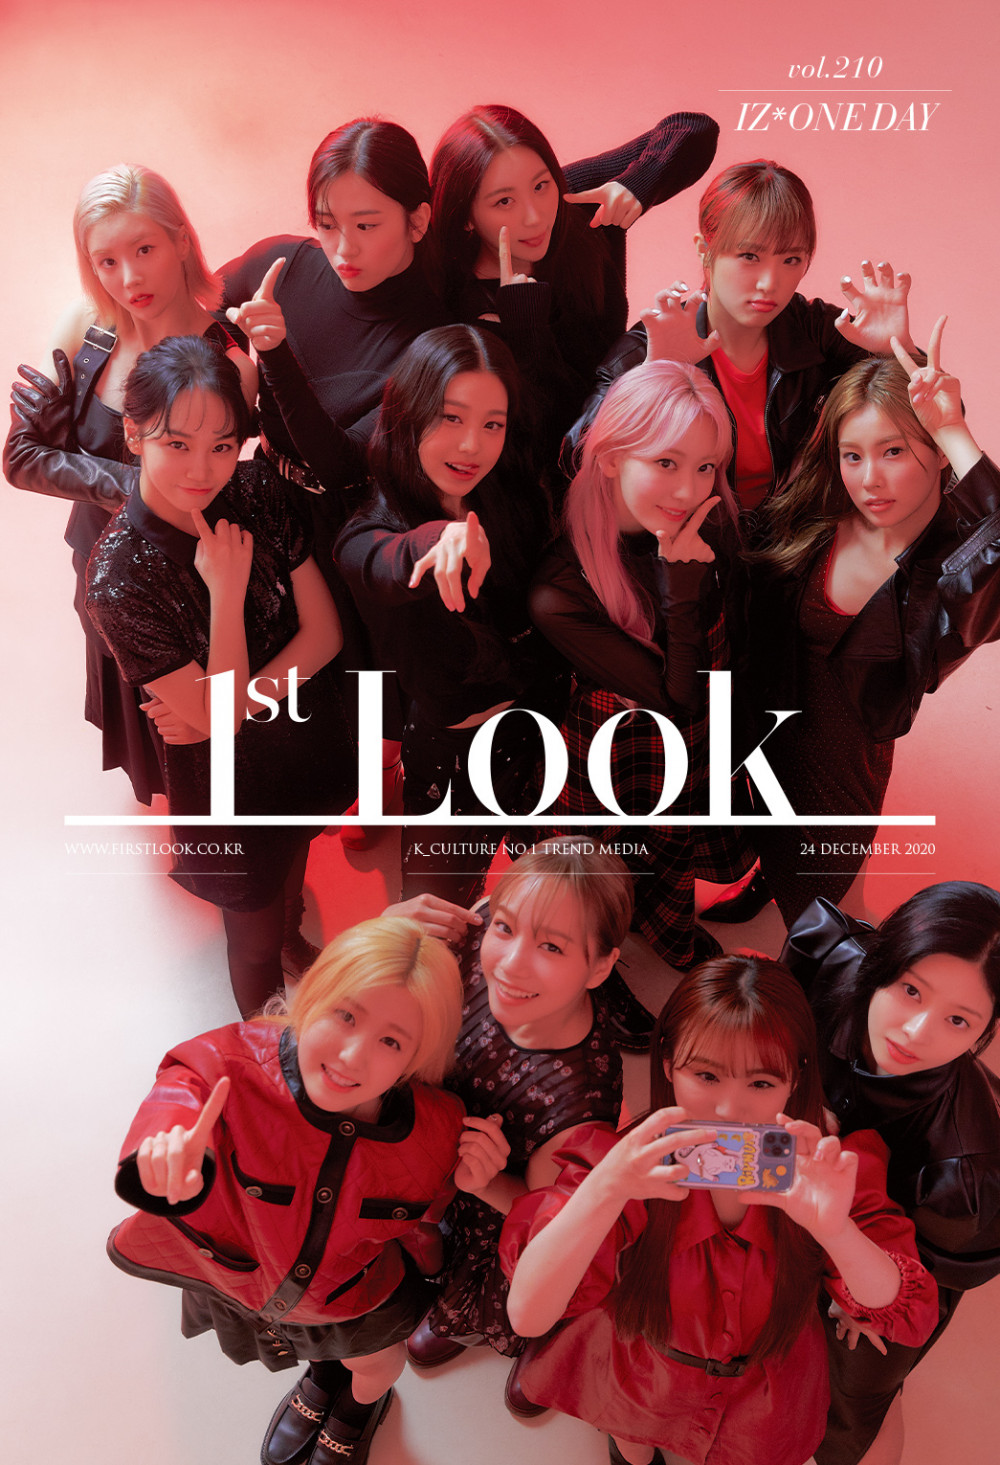 Журнал «1’st Look» объединился с организаторами МАМА 2020 для выпуска специальных изданий с BoA, BTS и IZ*ONE